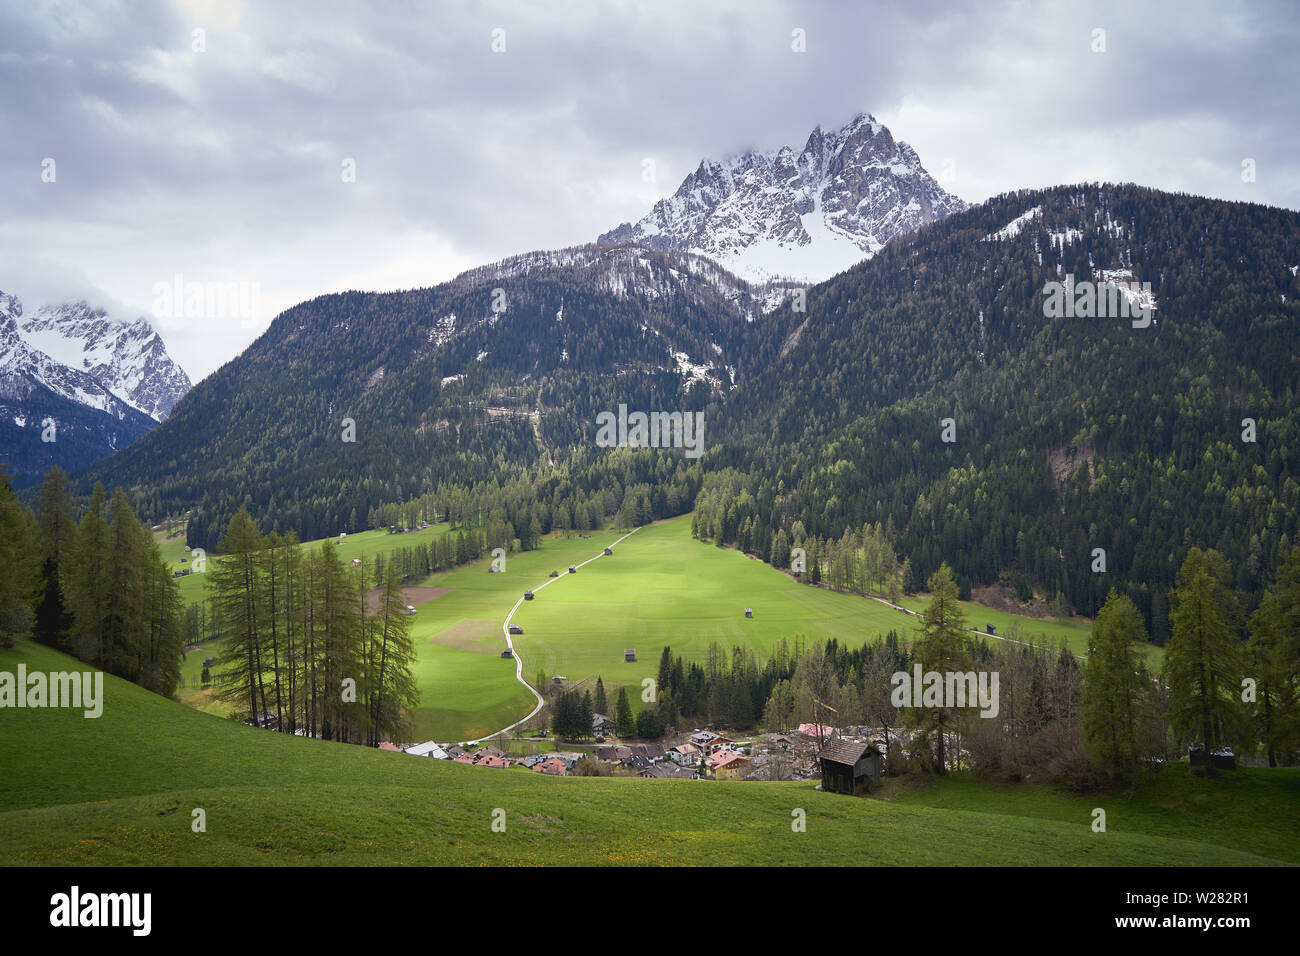 Vista di una valle nelle Alpi della regione Trentino con i tipici fienili in legno (Tabia in italiano) e le Dolomiti sullo sfondo. Foto Stock